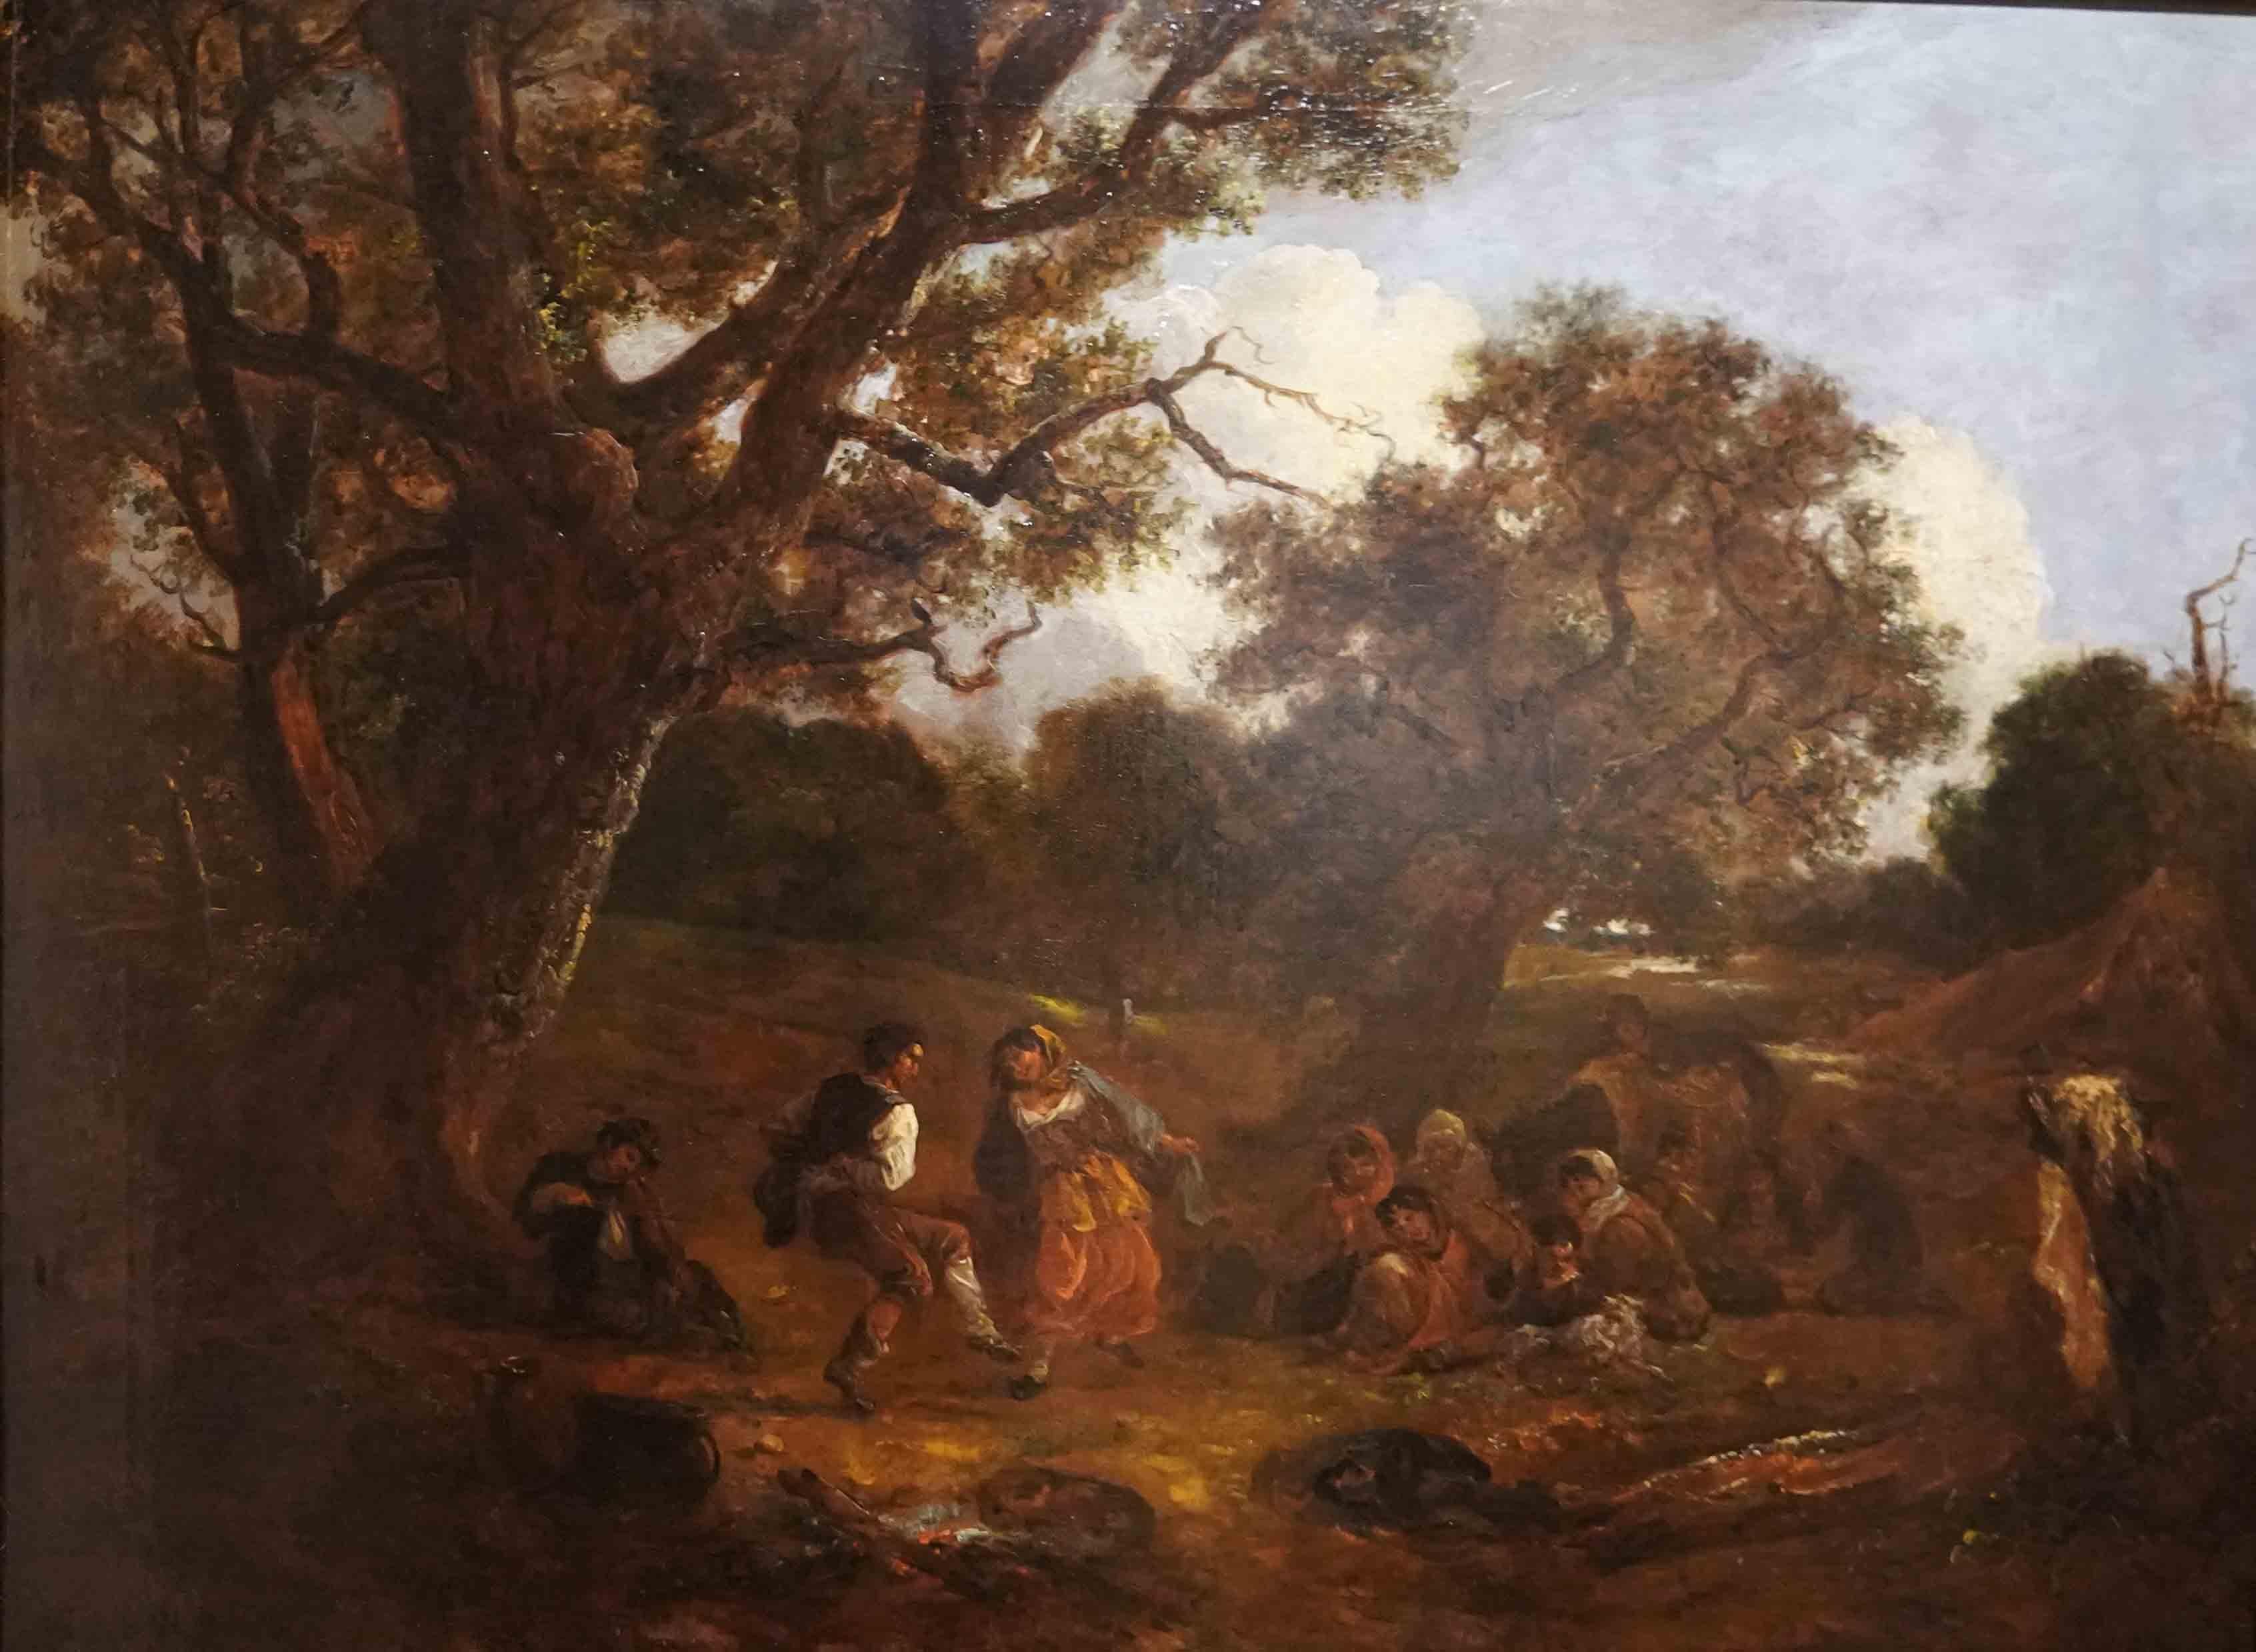 Tänzerinnen in einer Landschaft – britisches figuratives Landschaftsgemälde des 19. Jahrhunderts – Painting von Thomas Baker of Bath